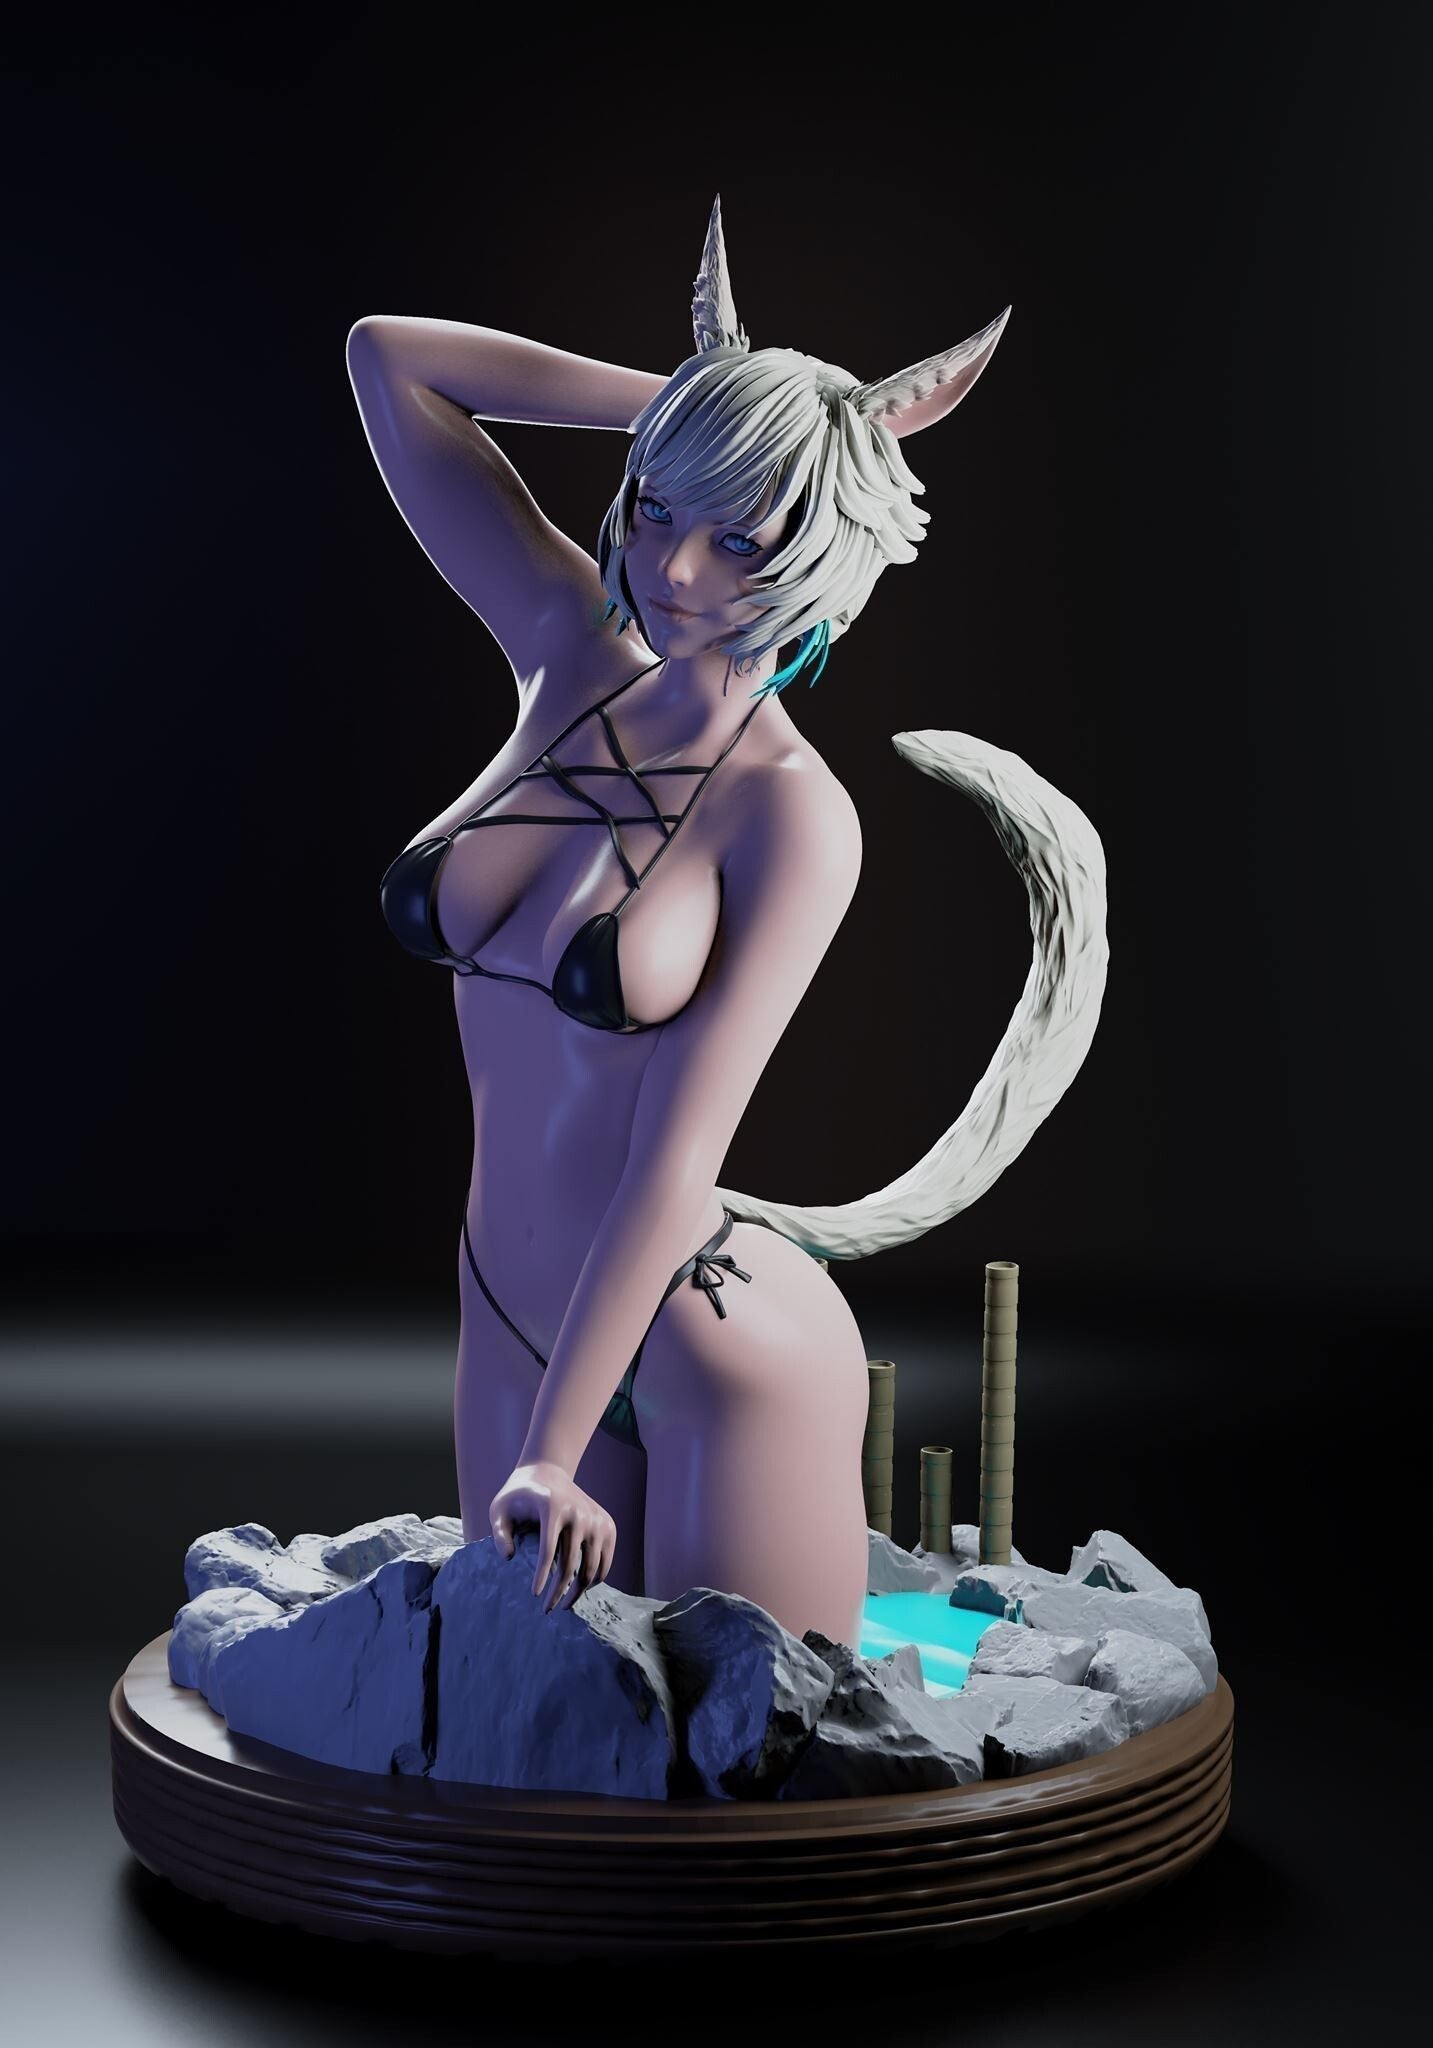 Yshtola Bikini NSFW - Final Fantasy - STL 3D Print Files